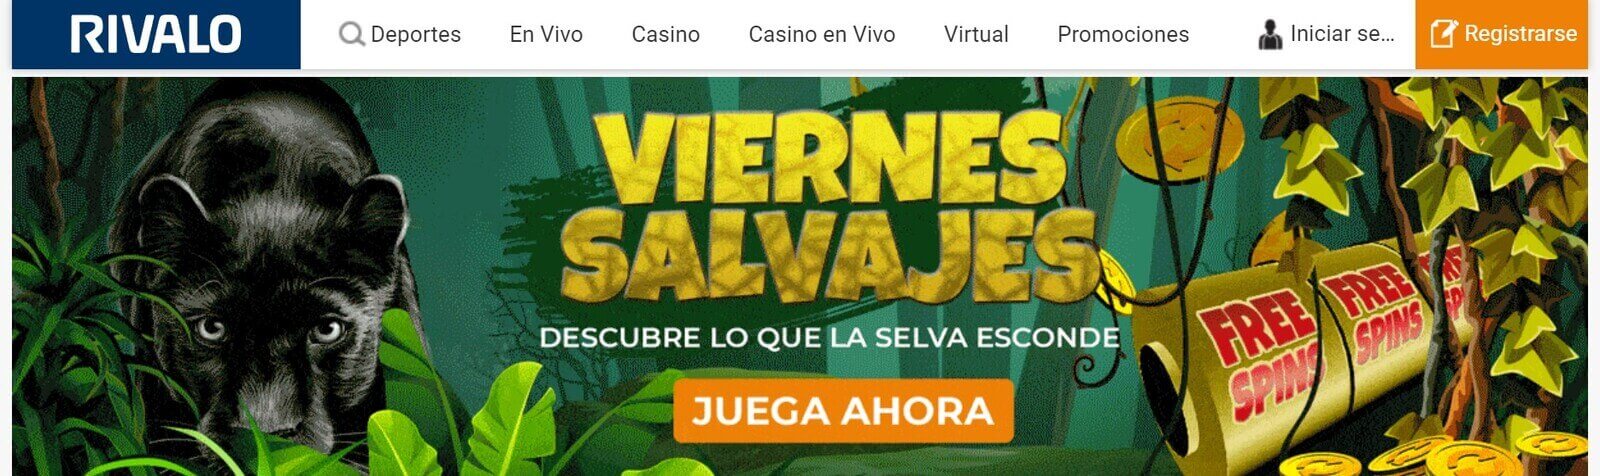 Casinos online en pesos chilenos   Rivalo Casino online en Chile para jugar en pesos